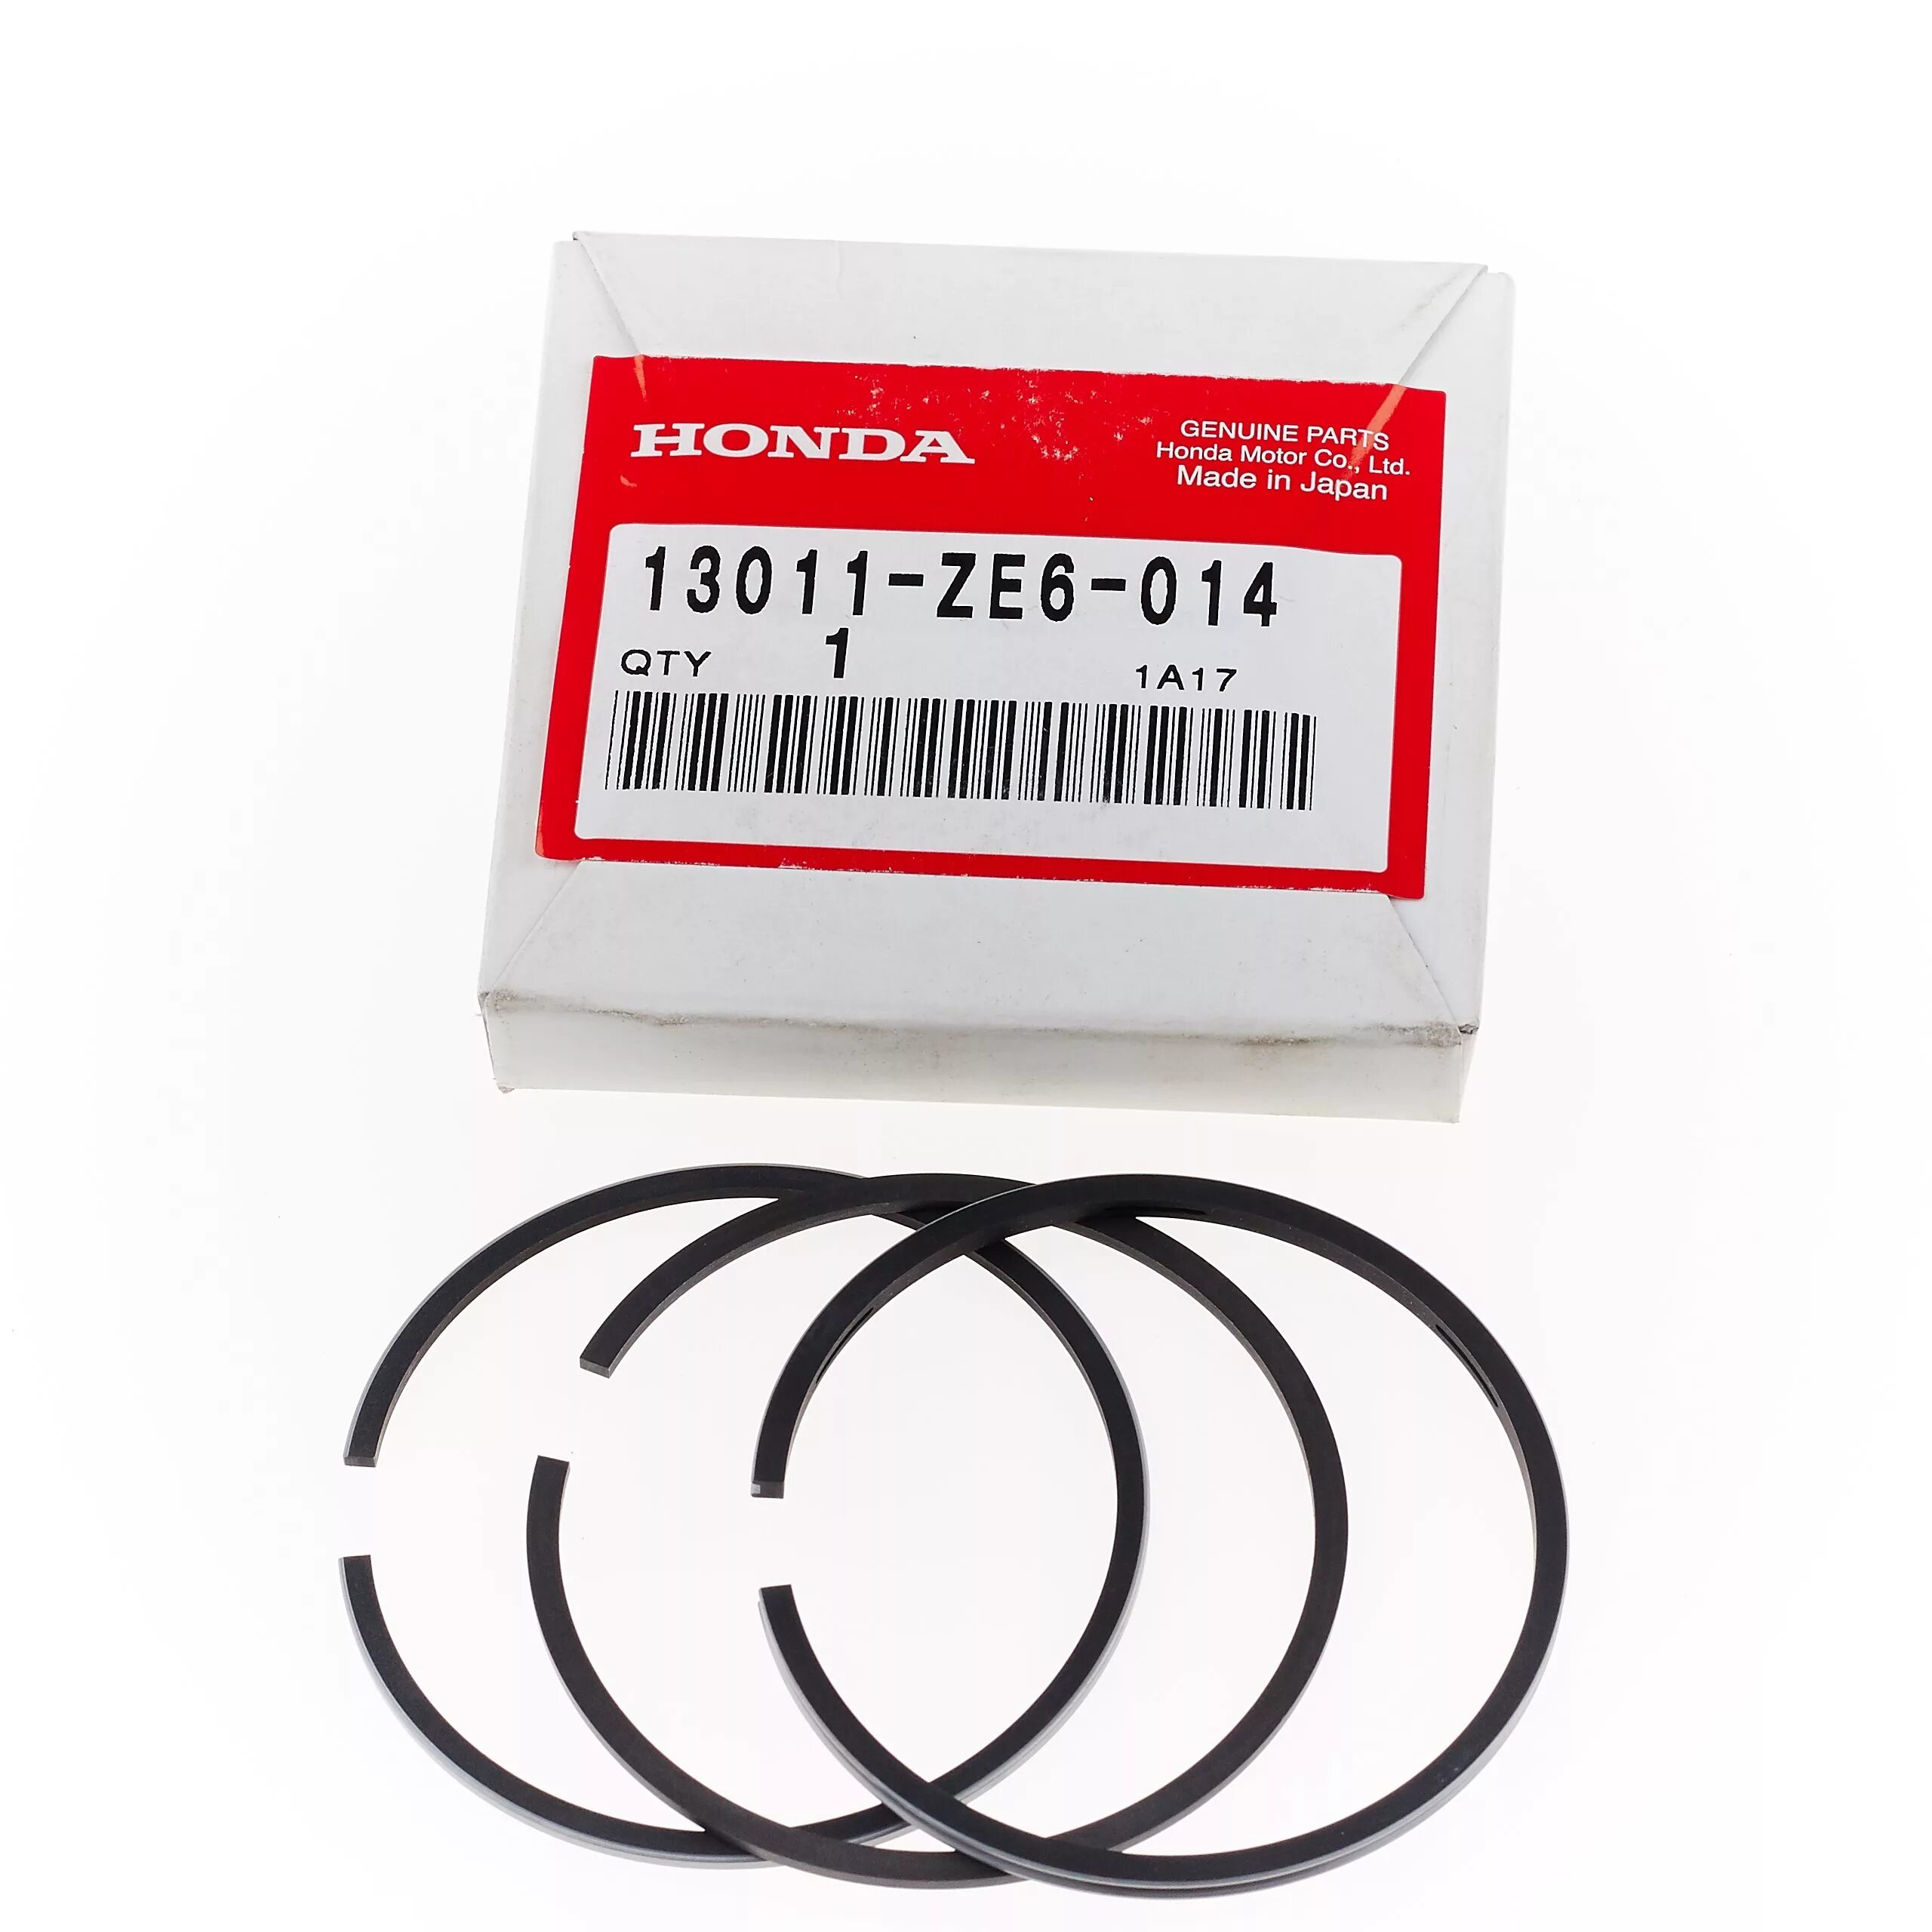 Кольца поршневые Honda gx120. Кольца поршневые для Honda GX 120 (60mm). Honda 13011-r40-a12 комплект поршневых колец. Кольца поршневые для Honda GX 120 (60mm) 109022 Размеры. Кольца поршневые honda